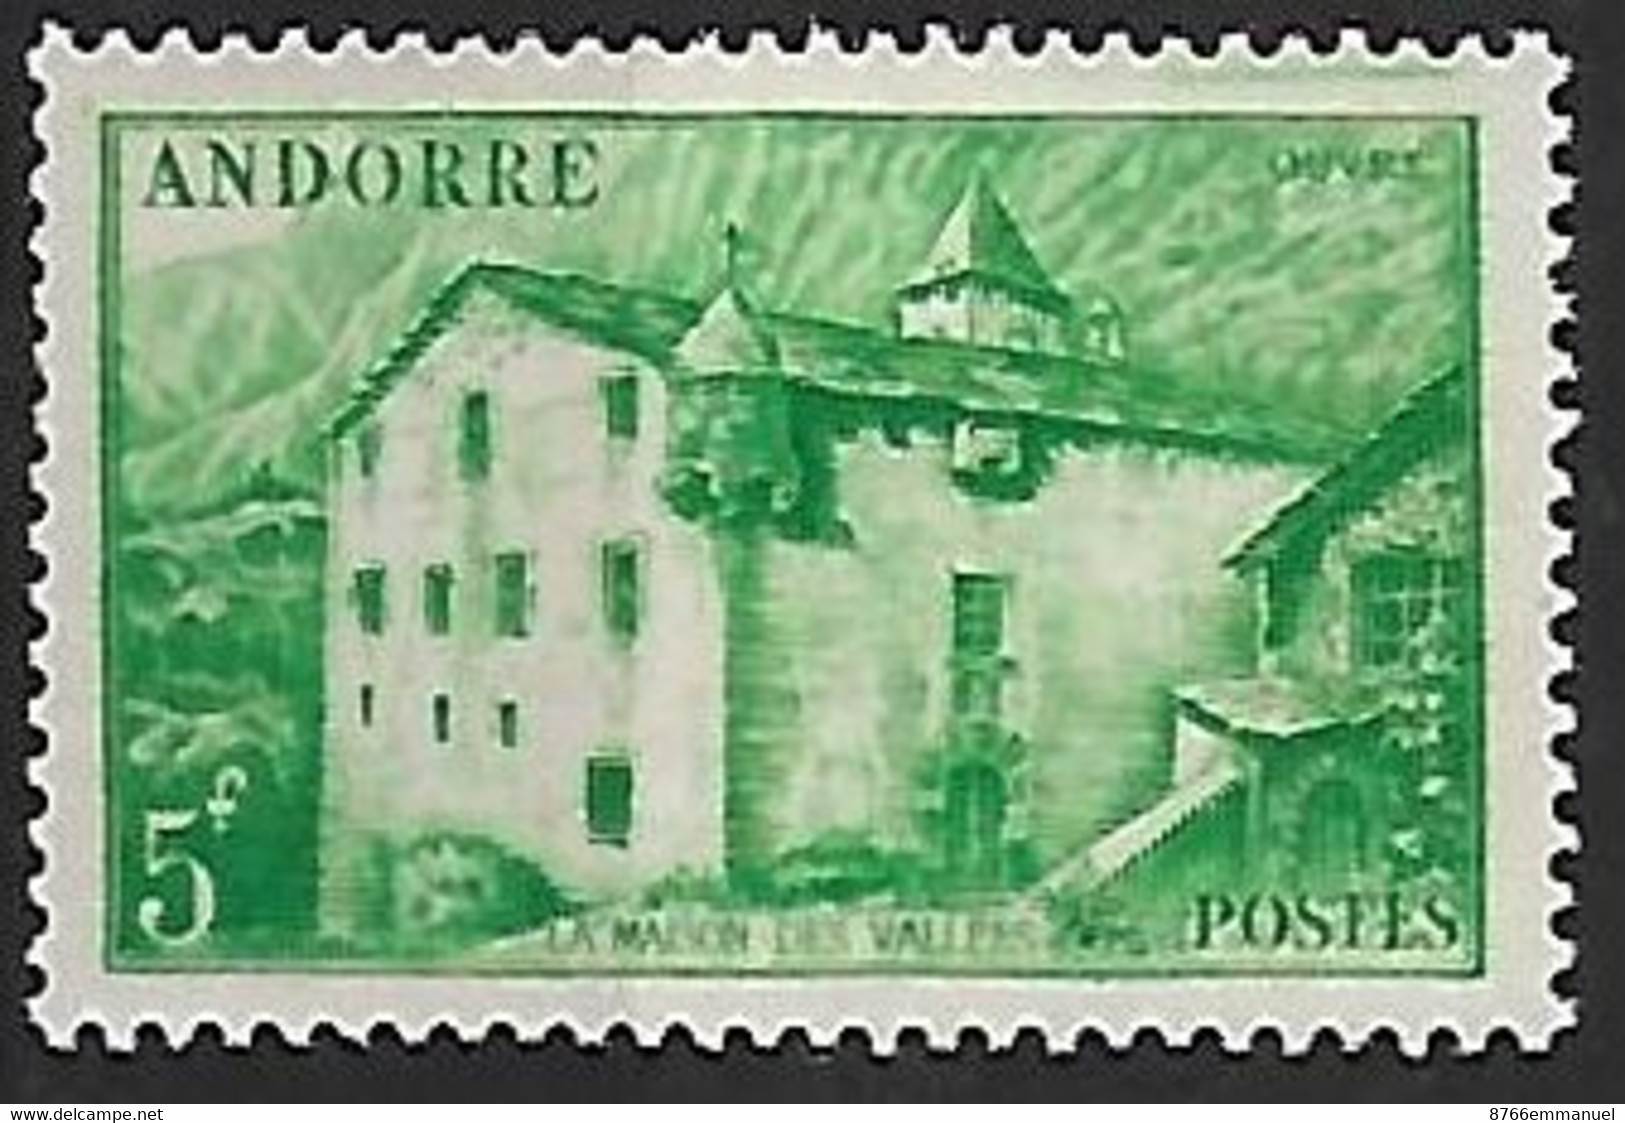 ANDORRE N°123 N* - Unused Stamps